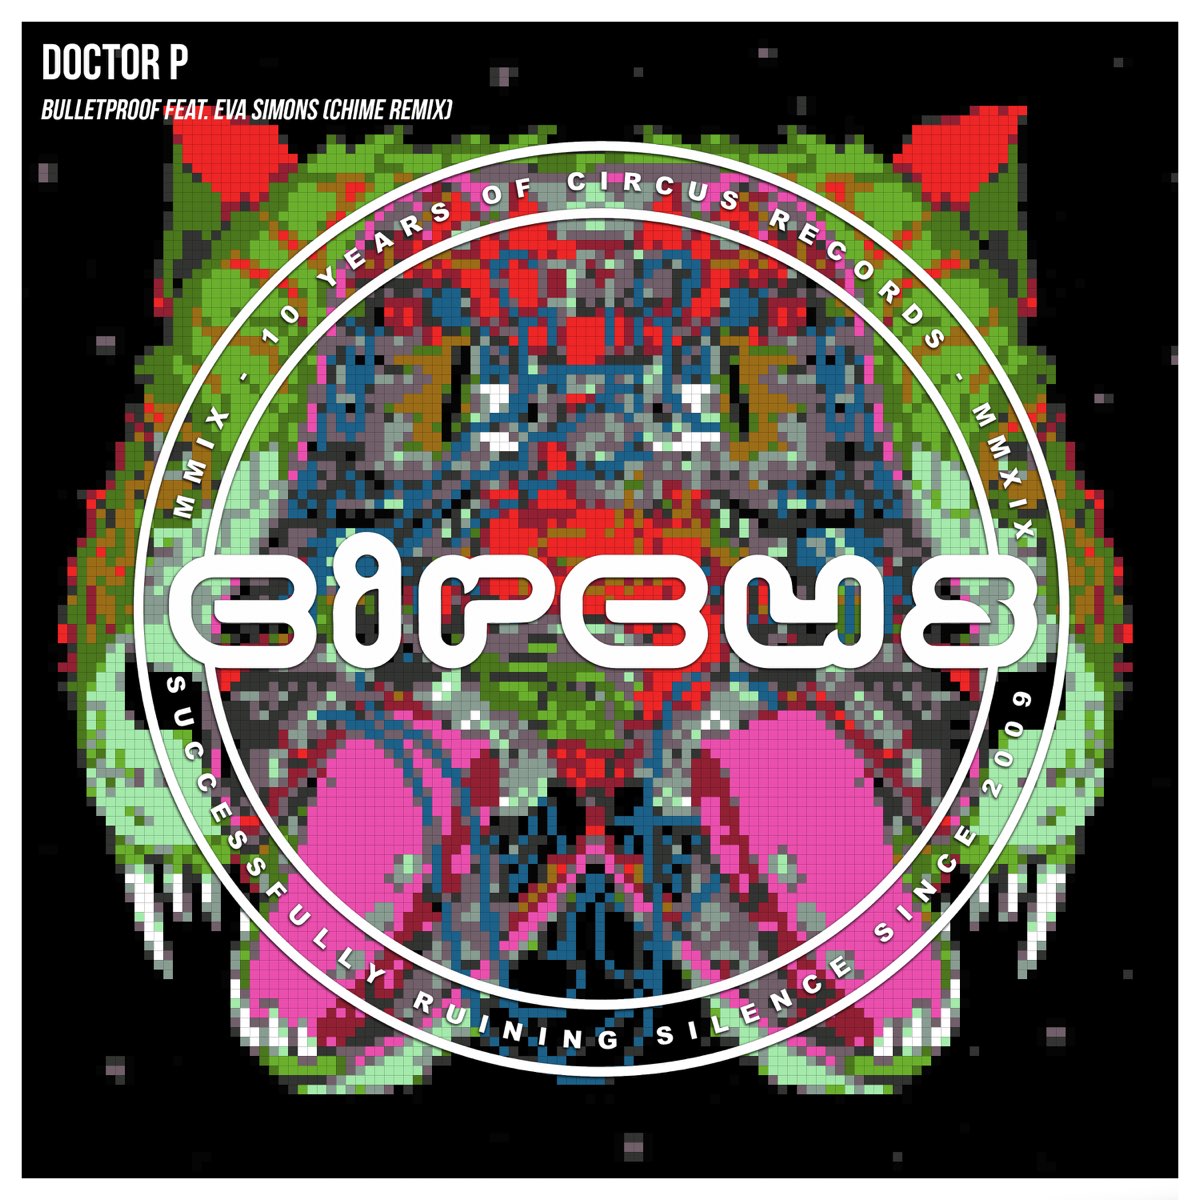 Doctor P featuring Eva Simons — Bulletproof cover artwork